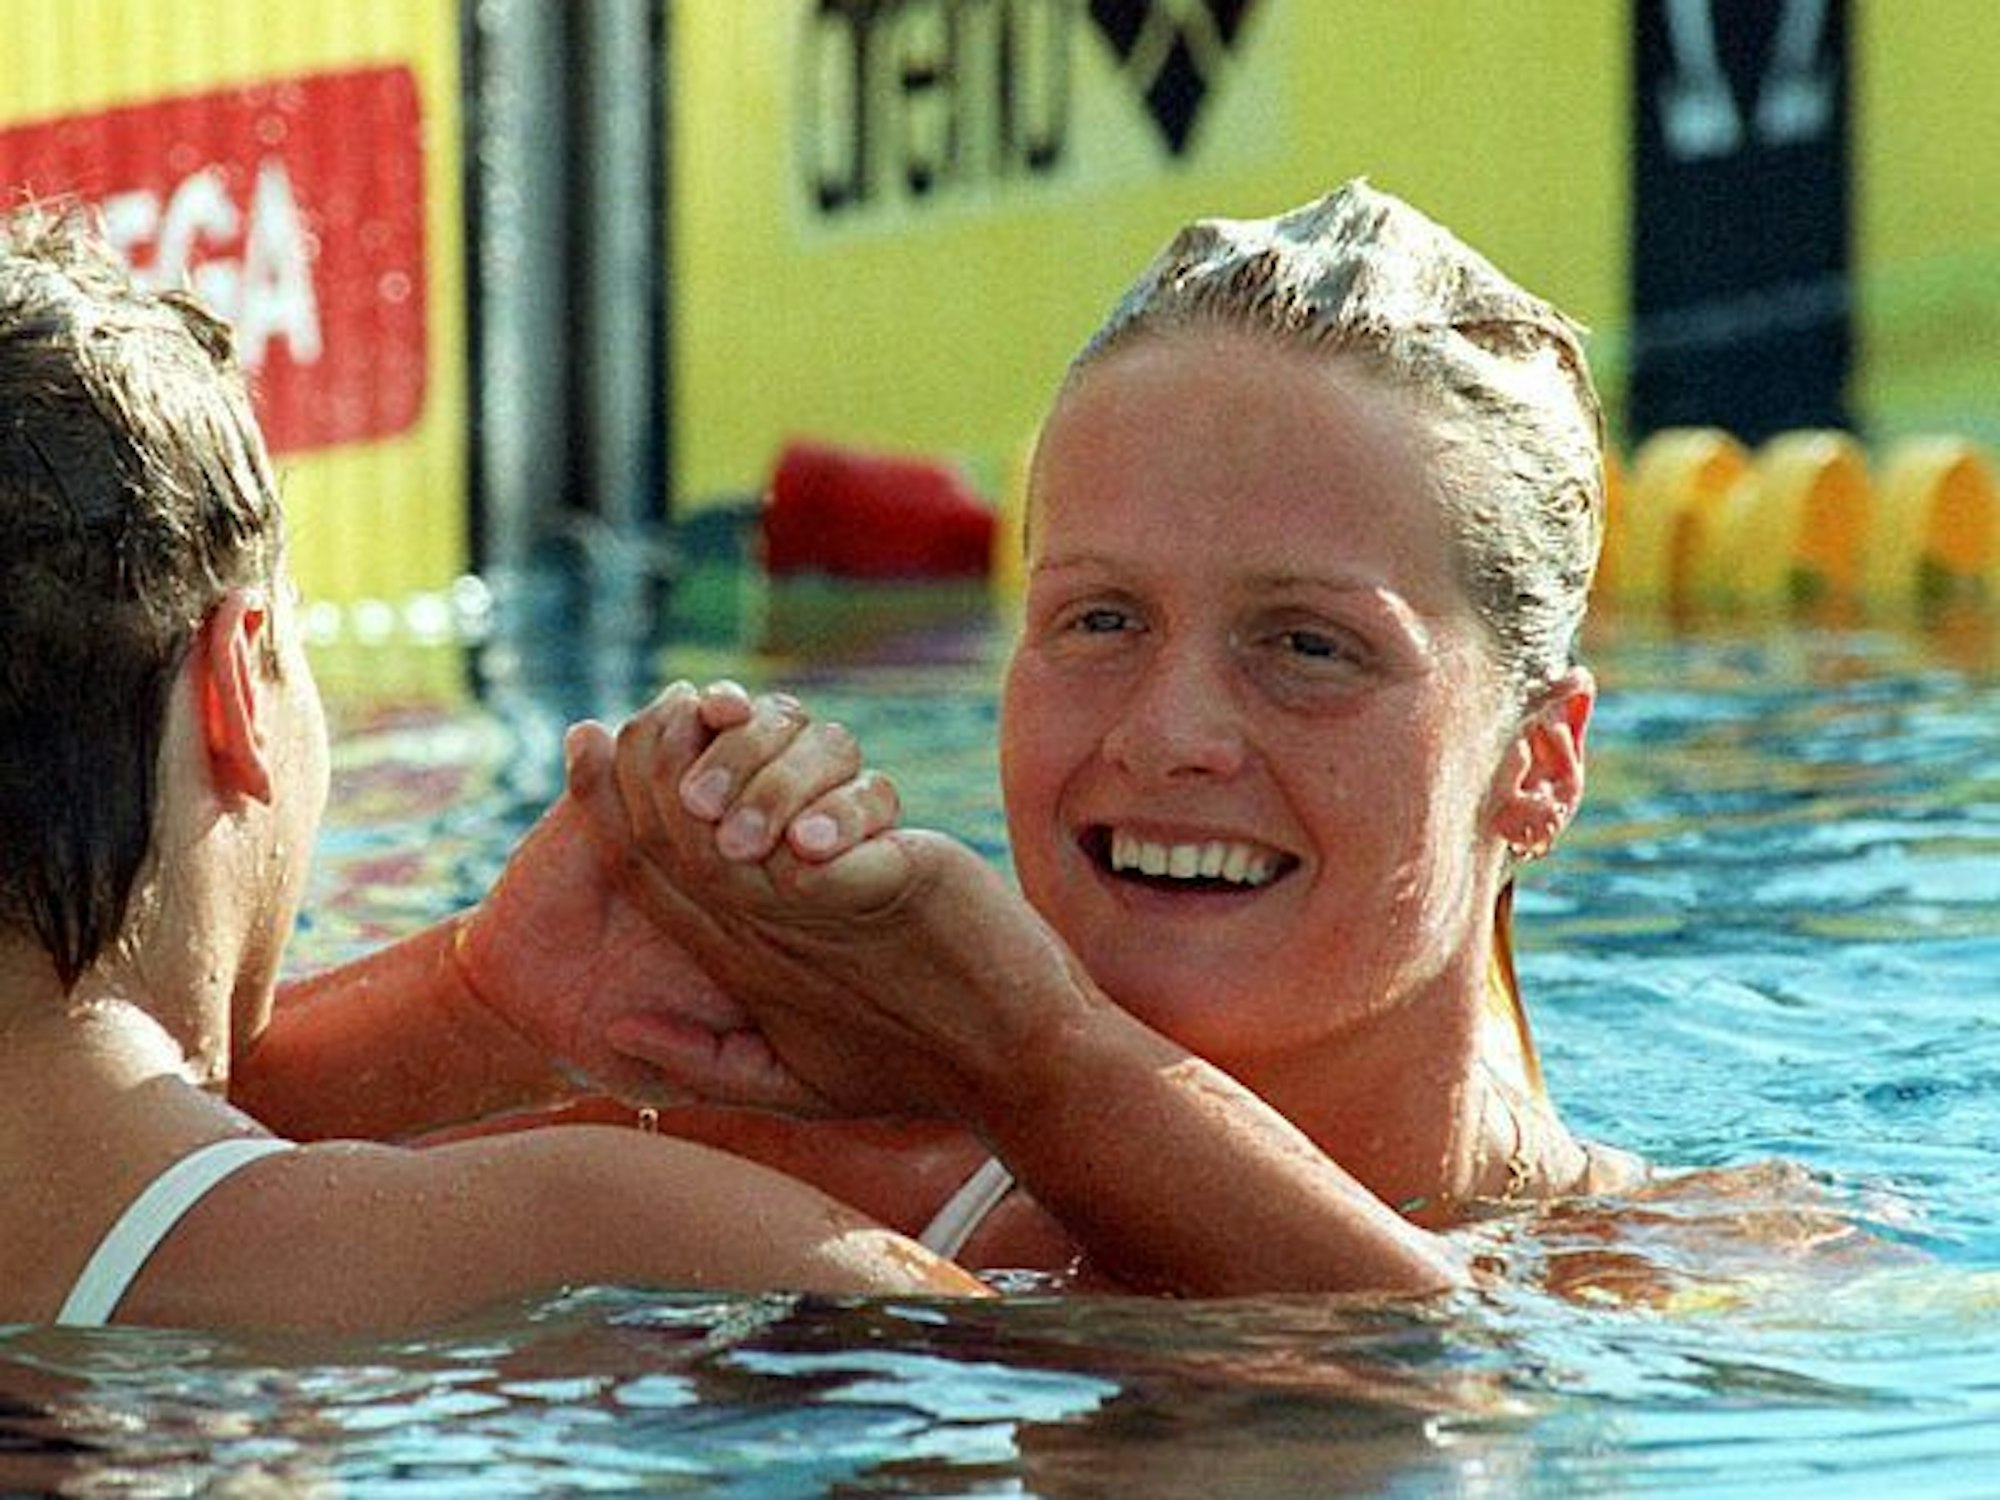 Eine junge Schwimmerin mit blonden Haaren im Becken. Sie lacht und klatscht mit einer anderen Schwimmerin ab.